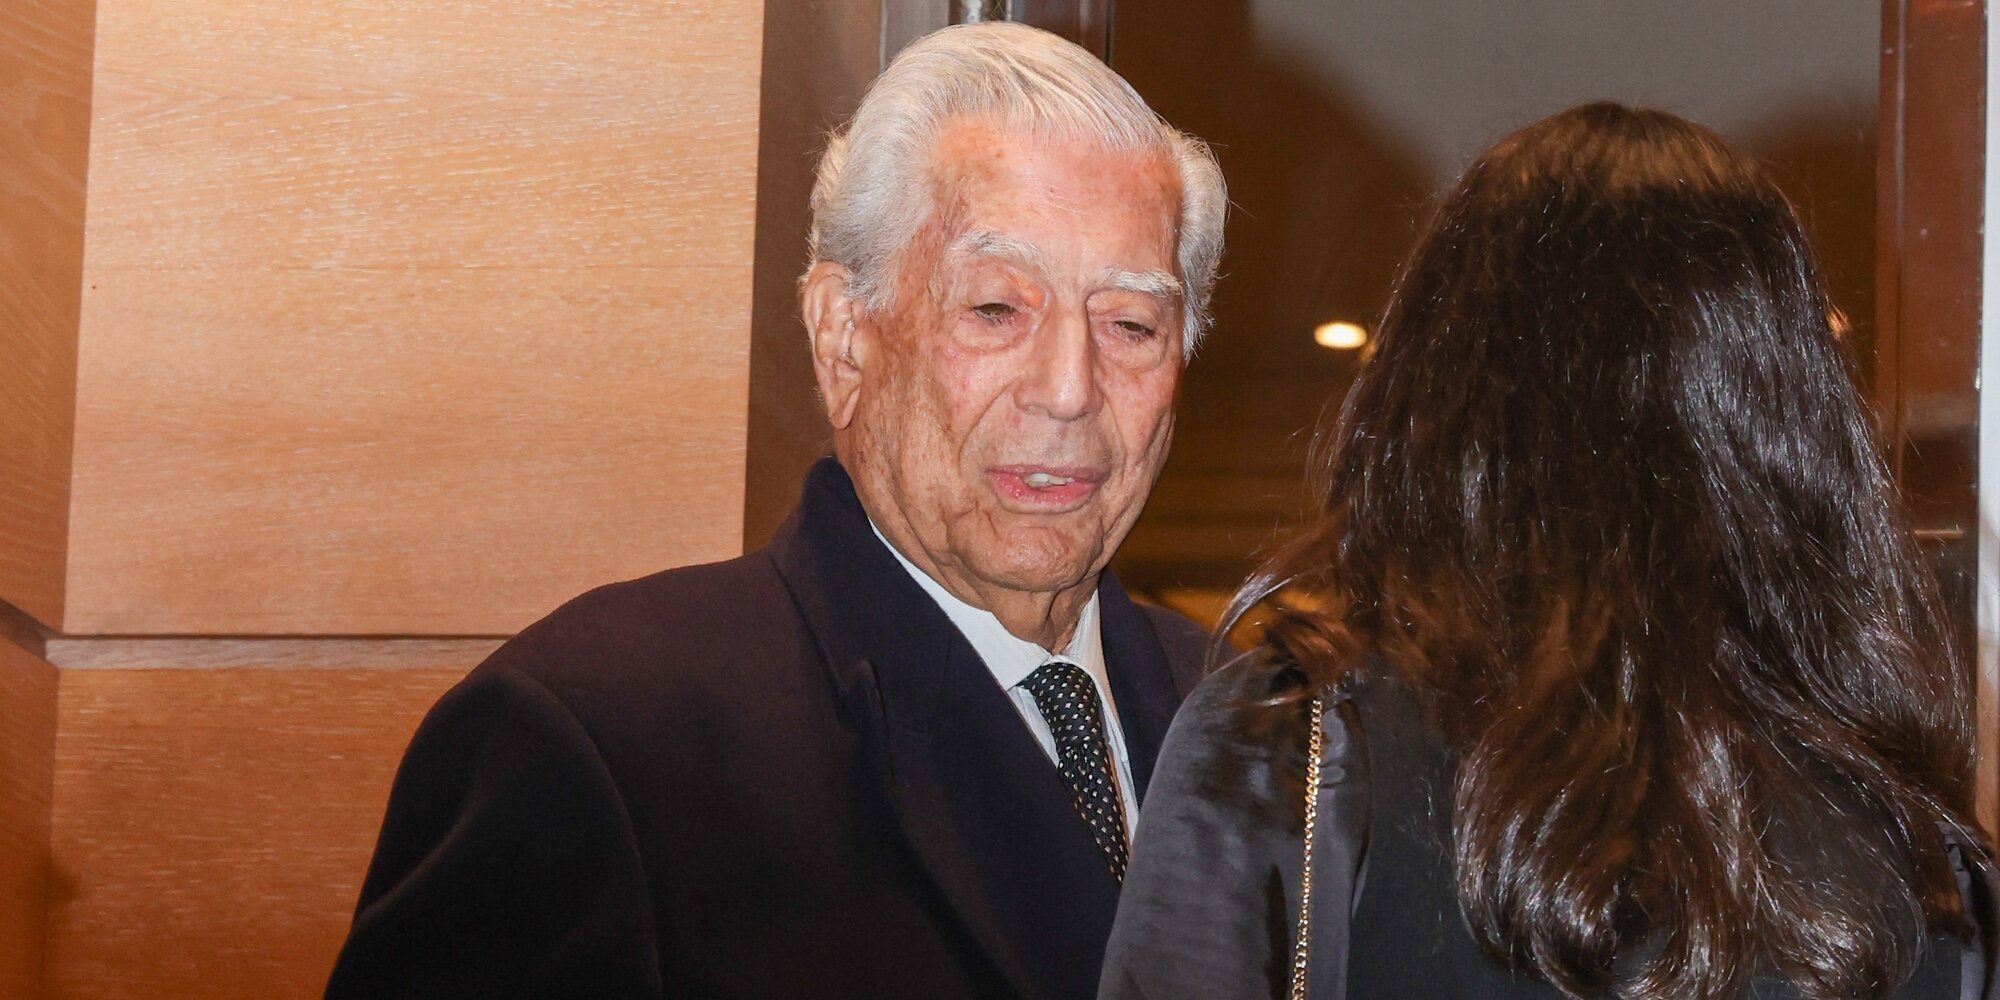 Mario Vargas Llosa y Patricia Llosa acuden juntos a un cóctel en París